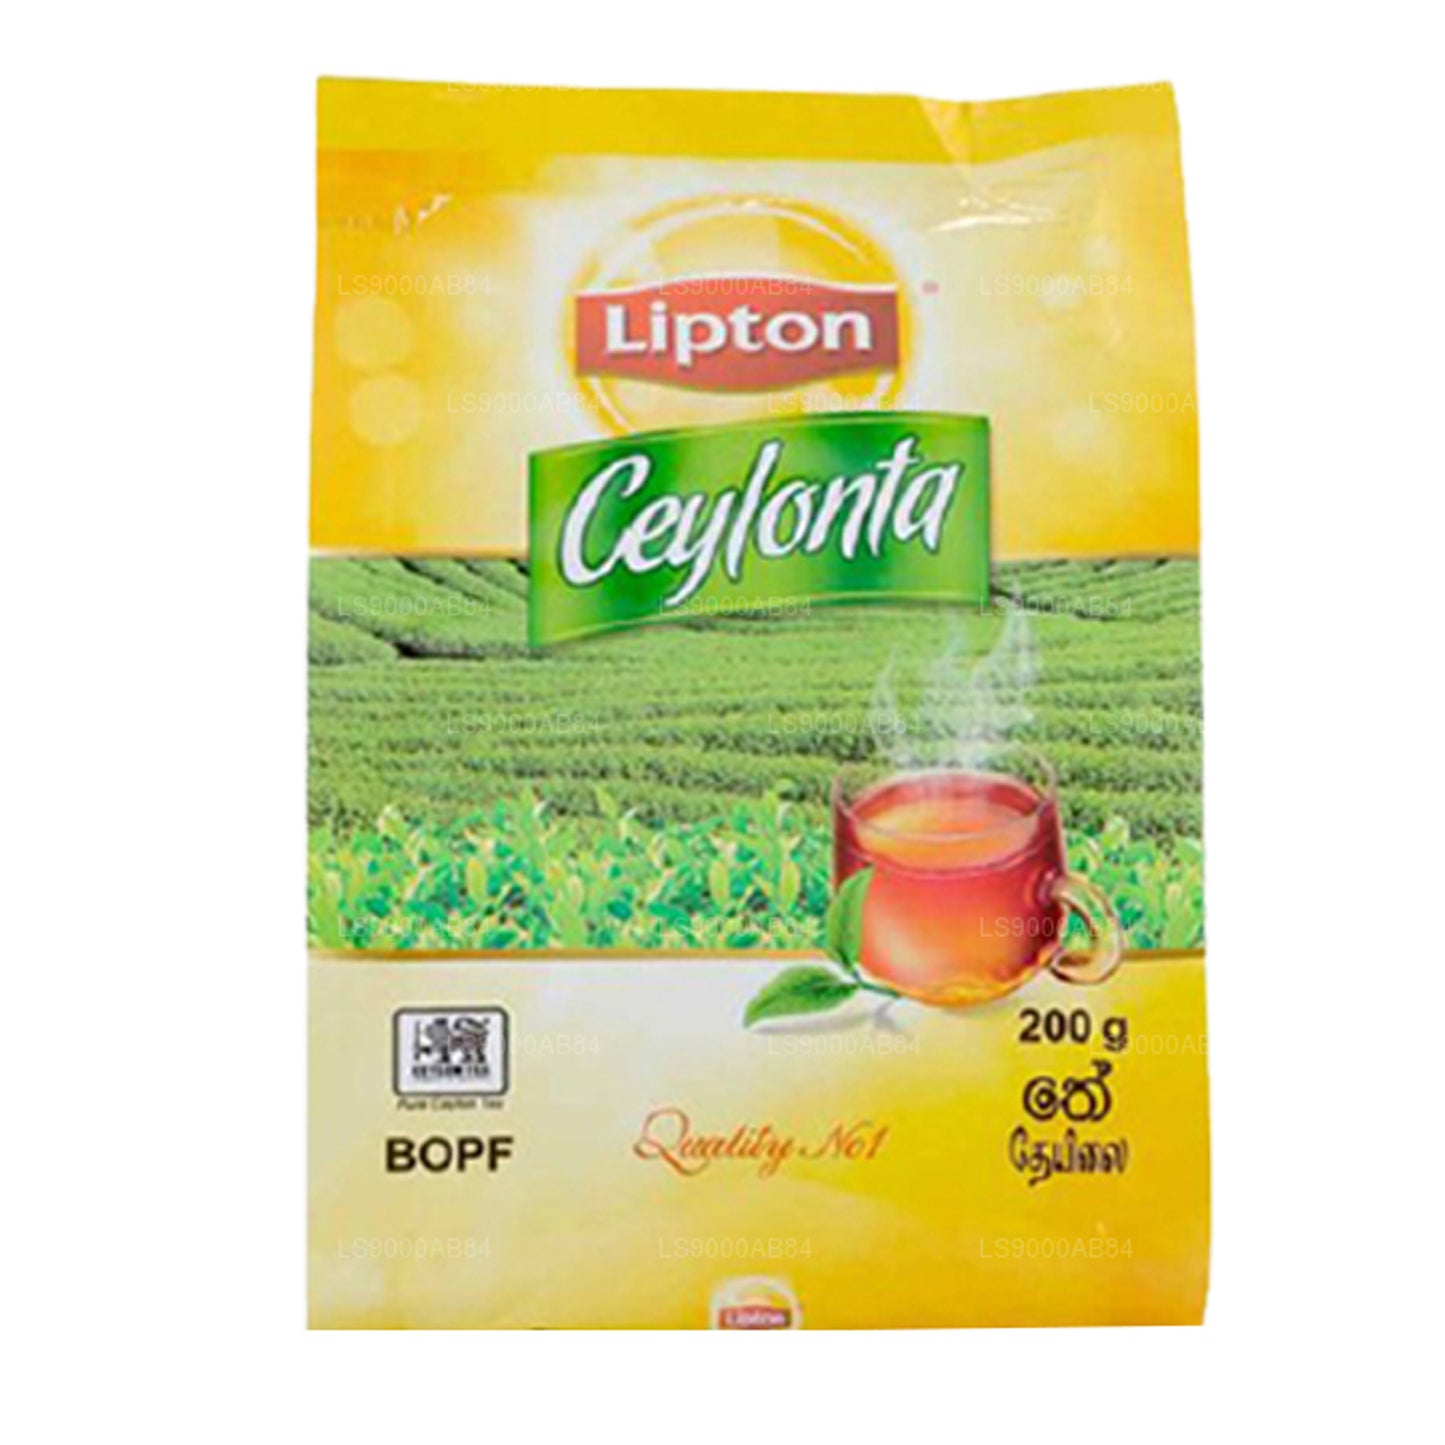 Tè Lipton Ceylonta BOPF Grade (200g)